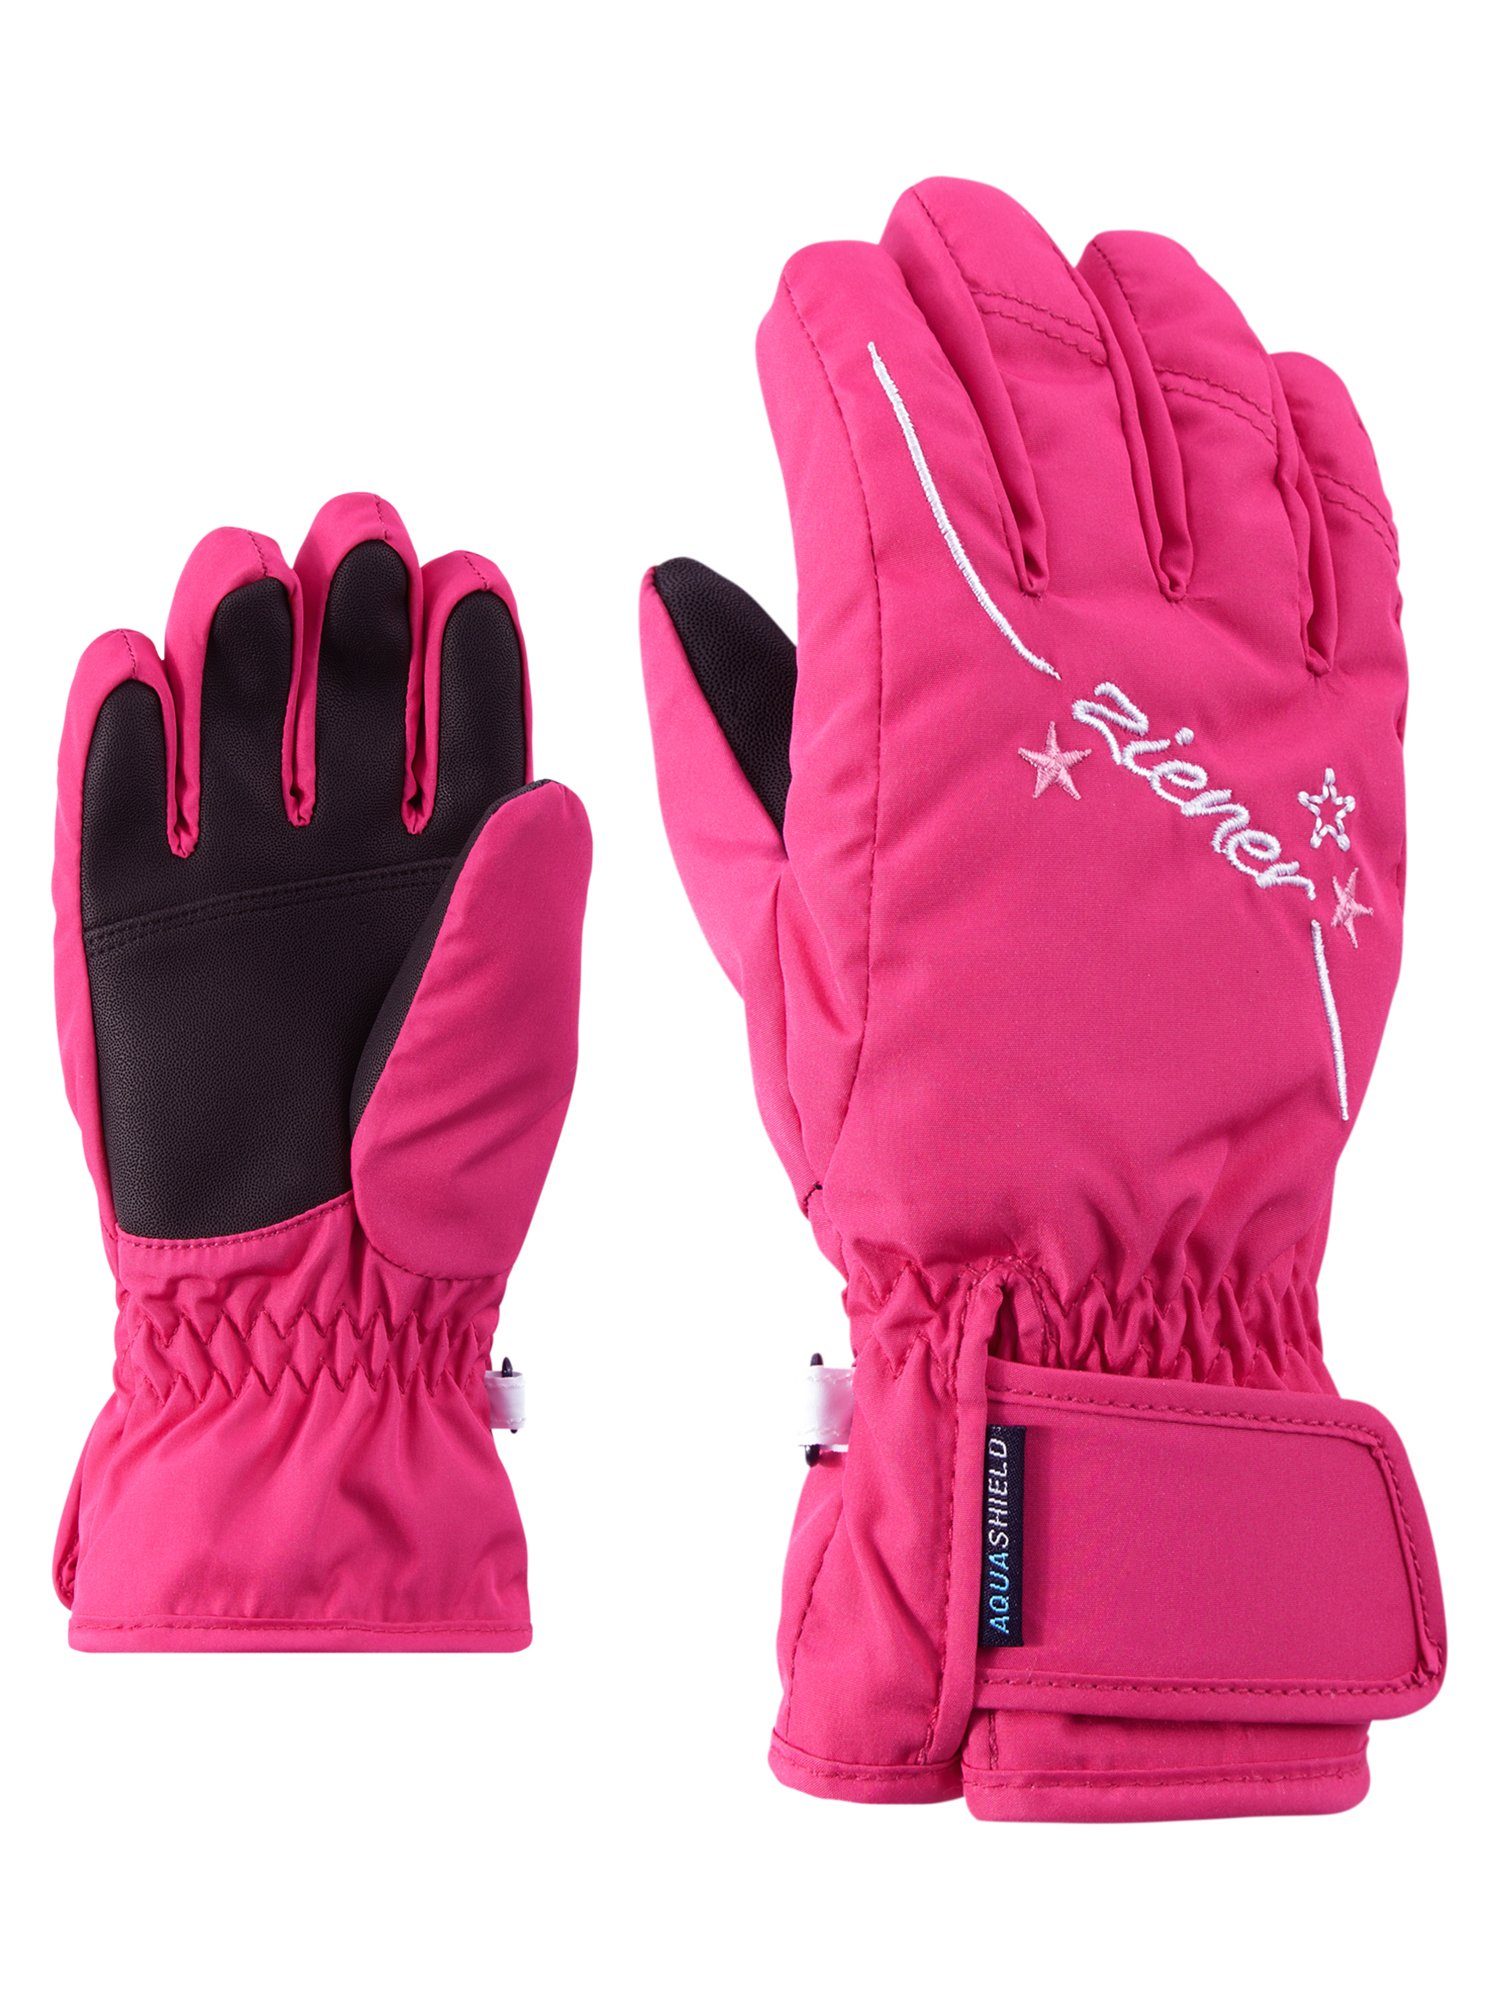 Rosa Ski Handschuhe kaufen » Pinke Ski Handschuhe | OTTO